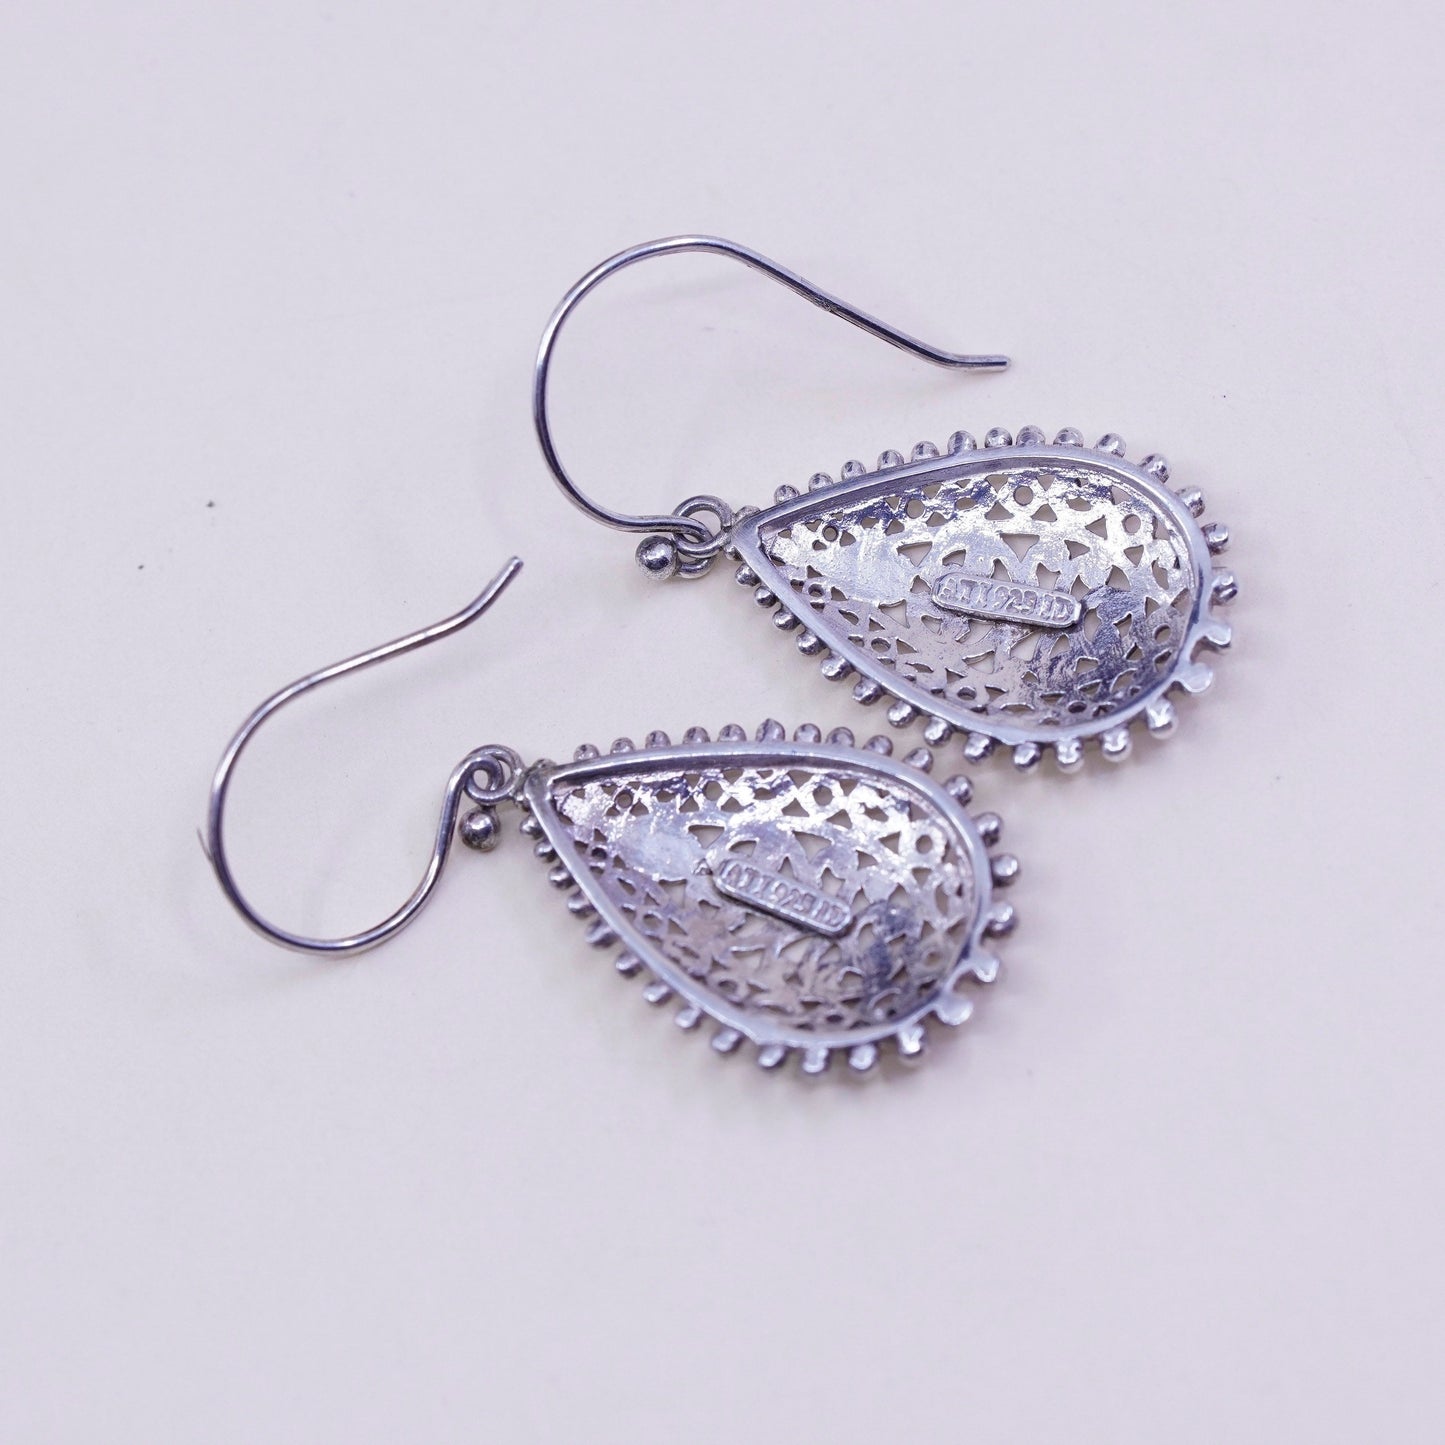 Vintage ATI Sterling silver handmade earrings, 925 filigree teardrop, stamped ATI 925